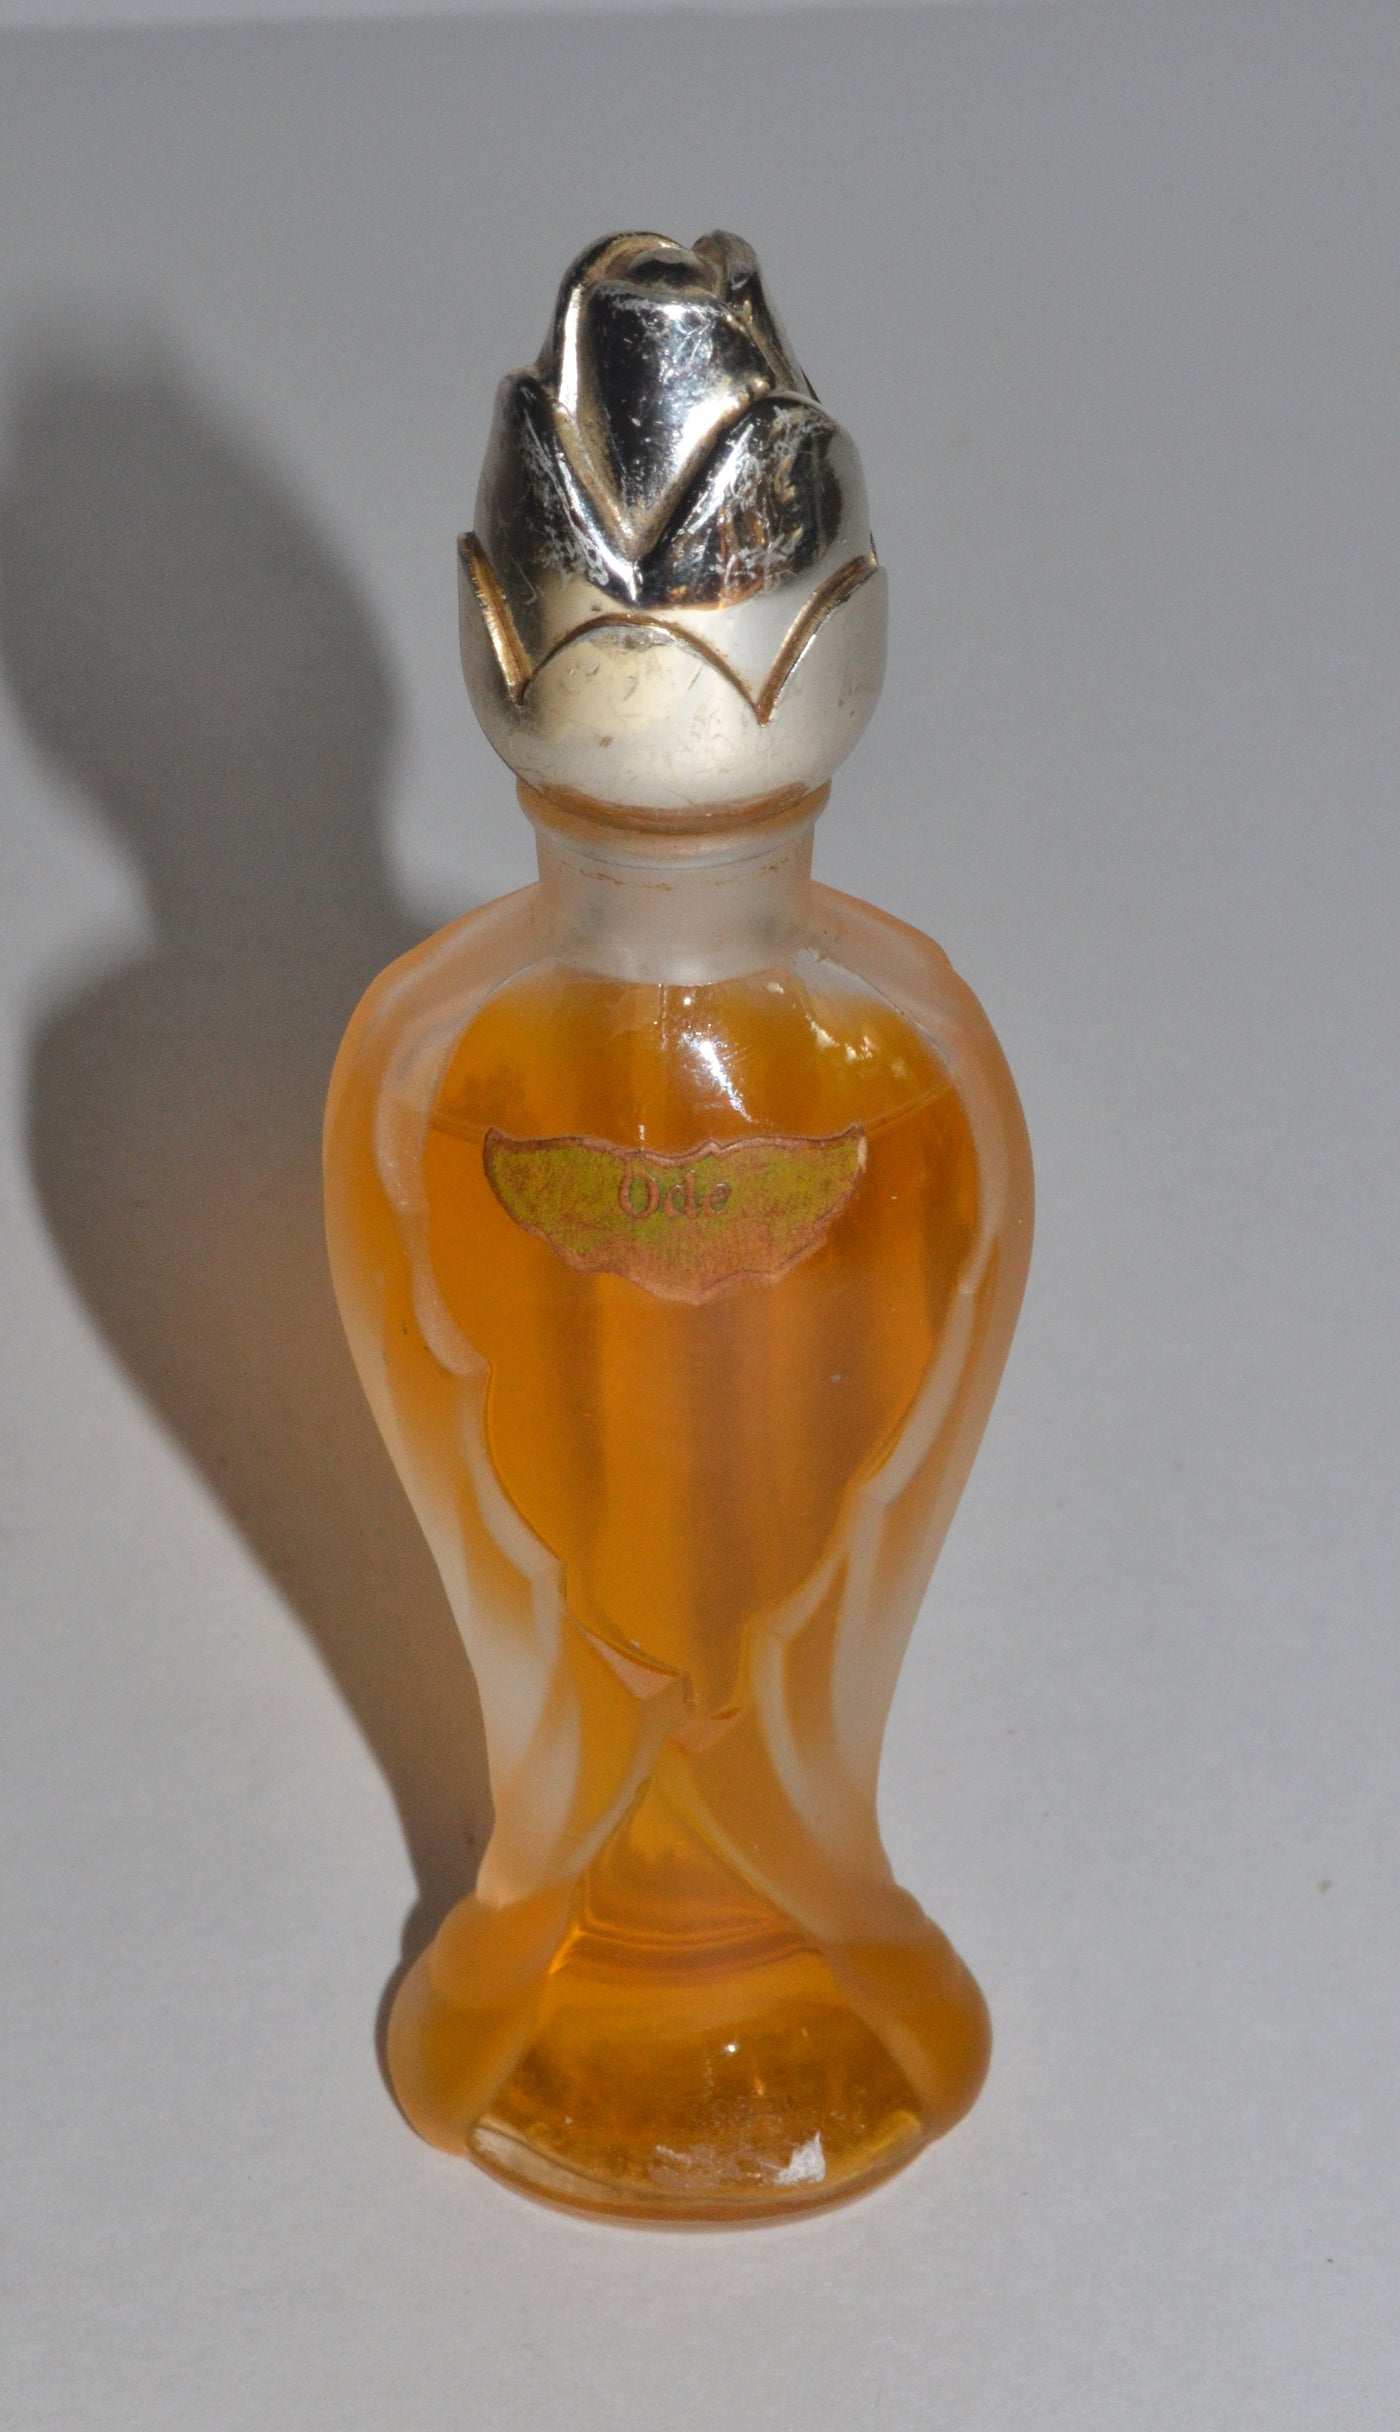 Vintage Ode Rosebud Perfume Bottle By Guerlain